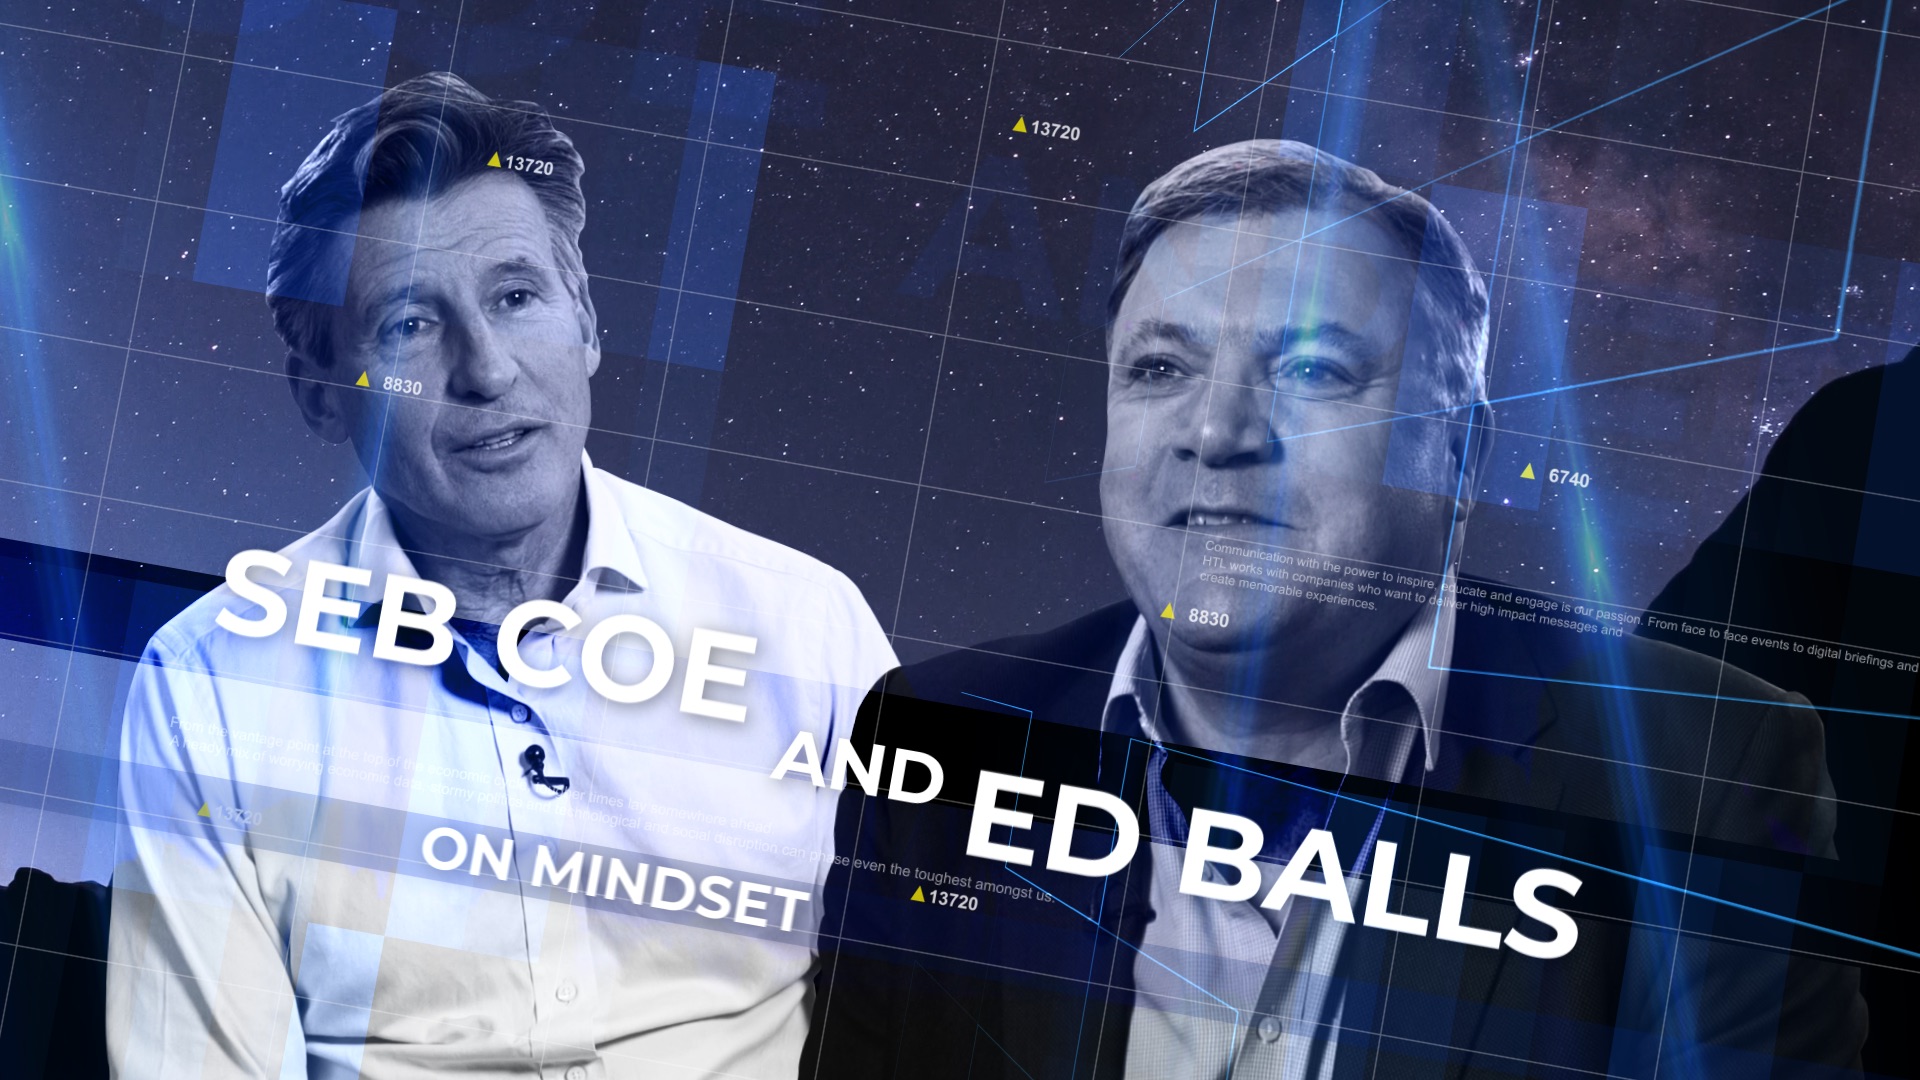 Seb Coe and Ed Balls on mindset